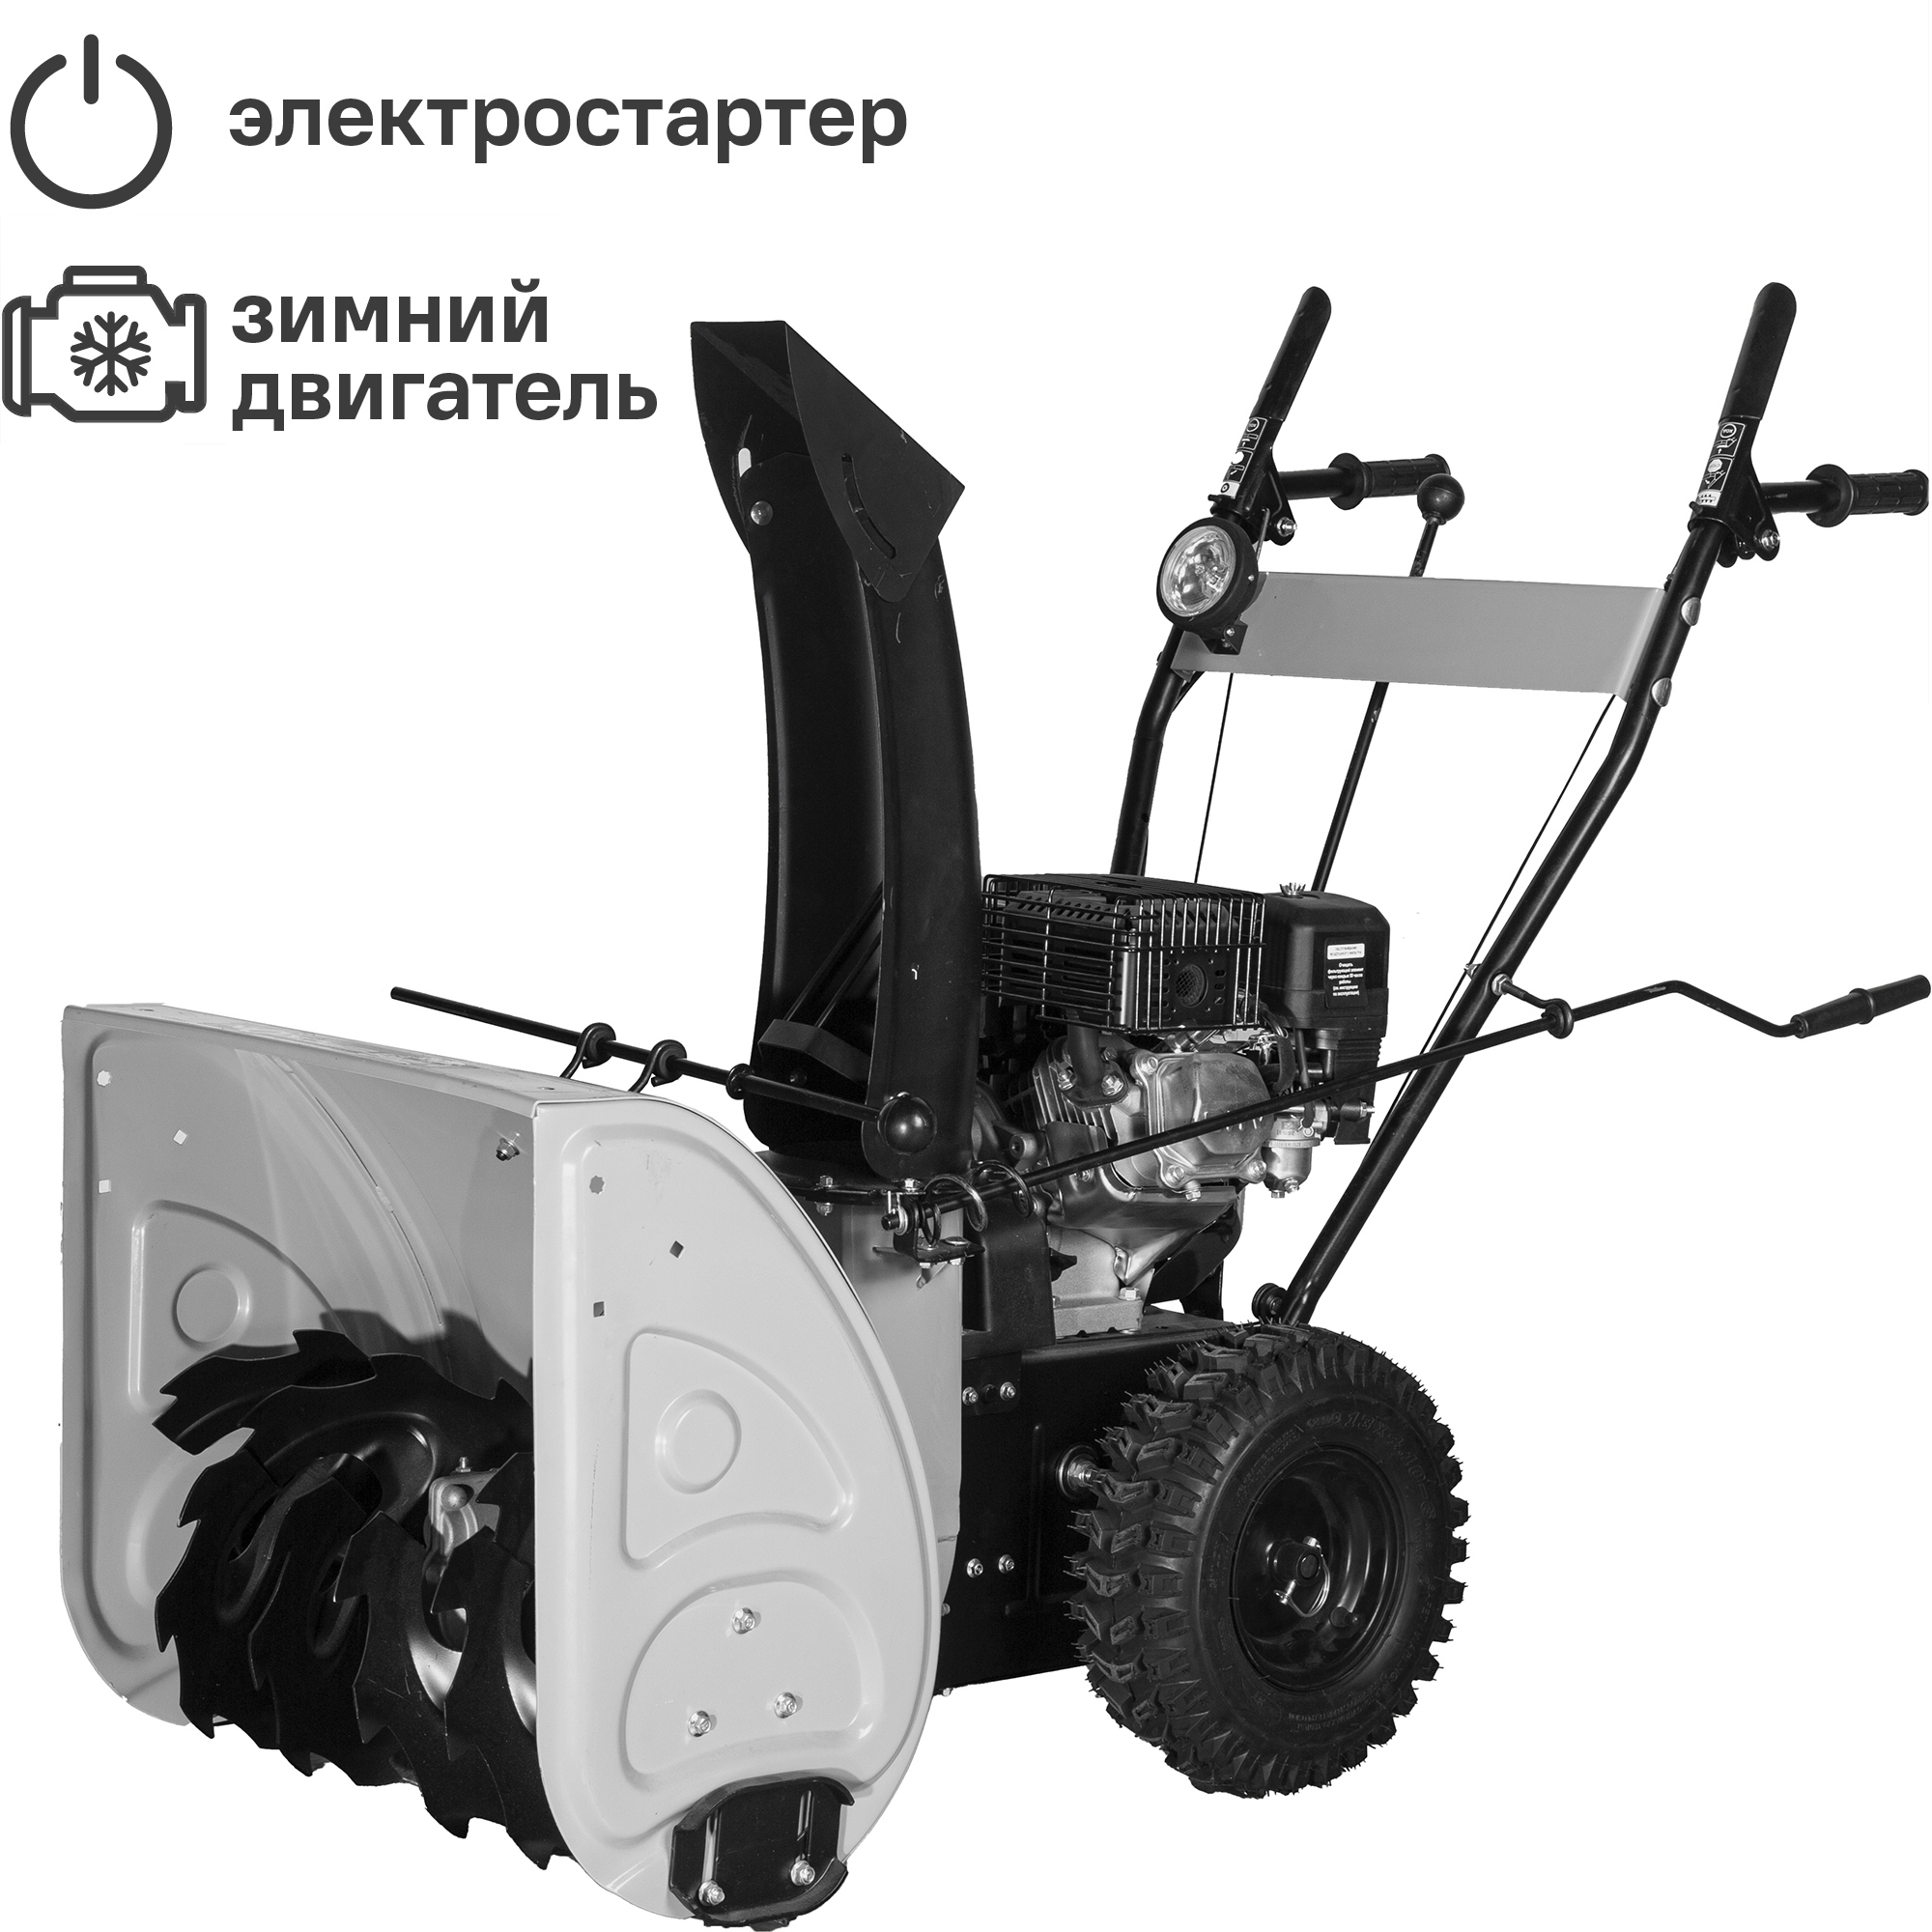 Снегоуборщик бензиновый  СМБ-650Э 56 см 6.5 л.с. по цене 21884 .